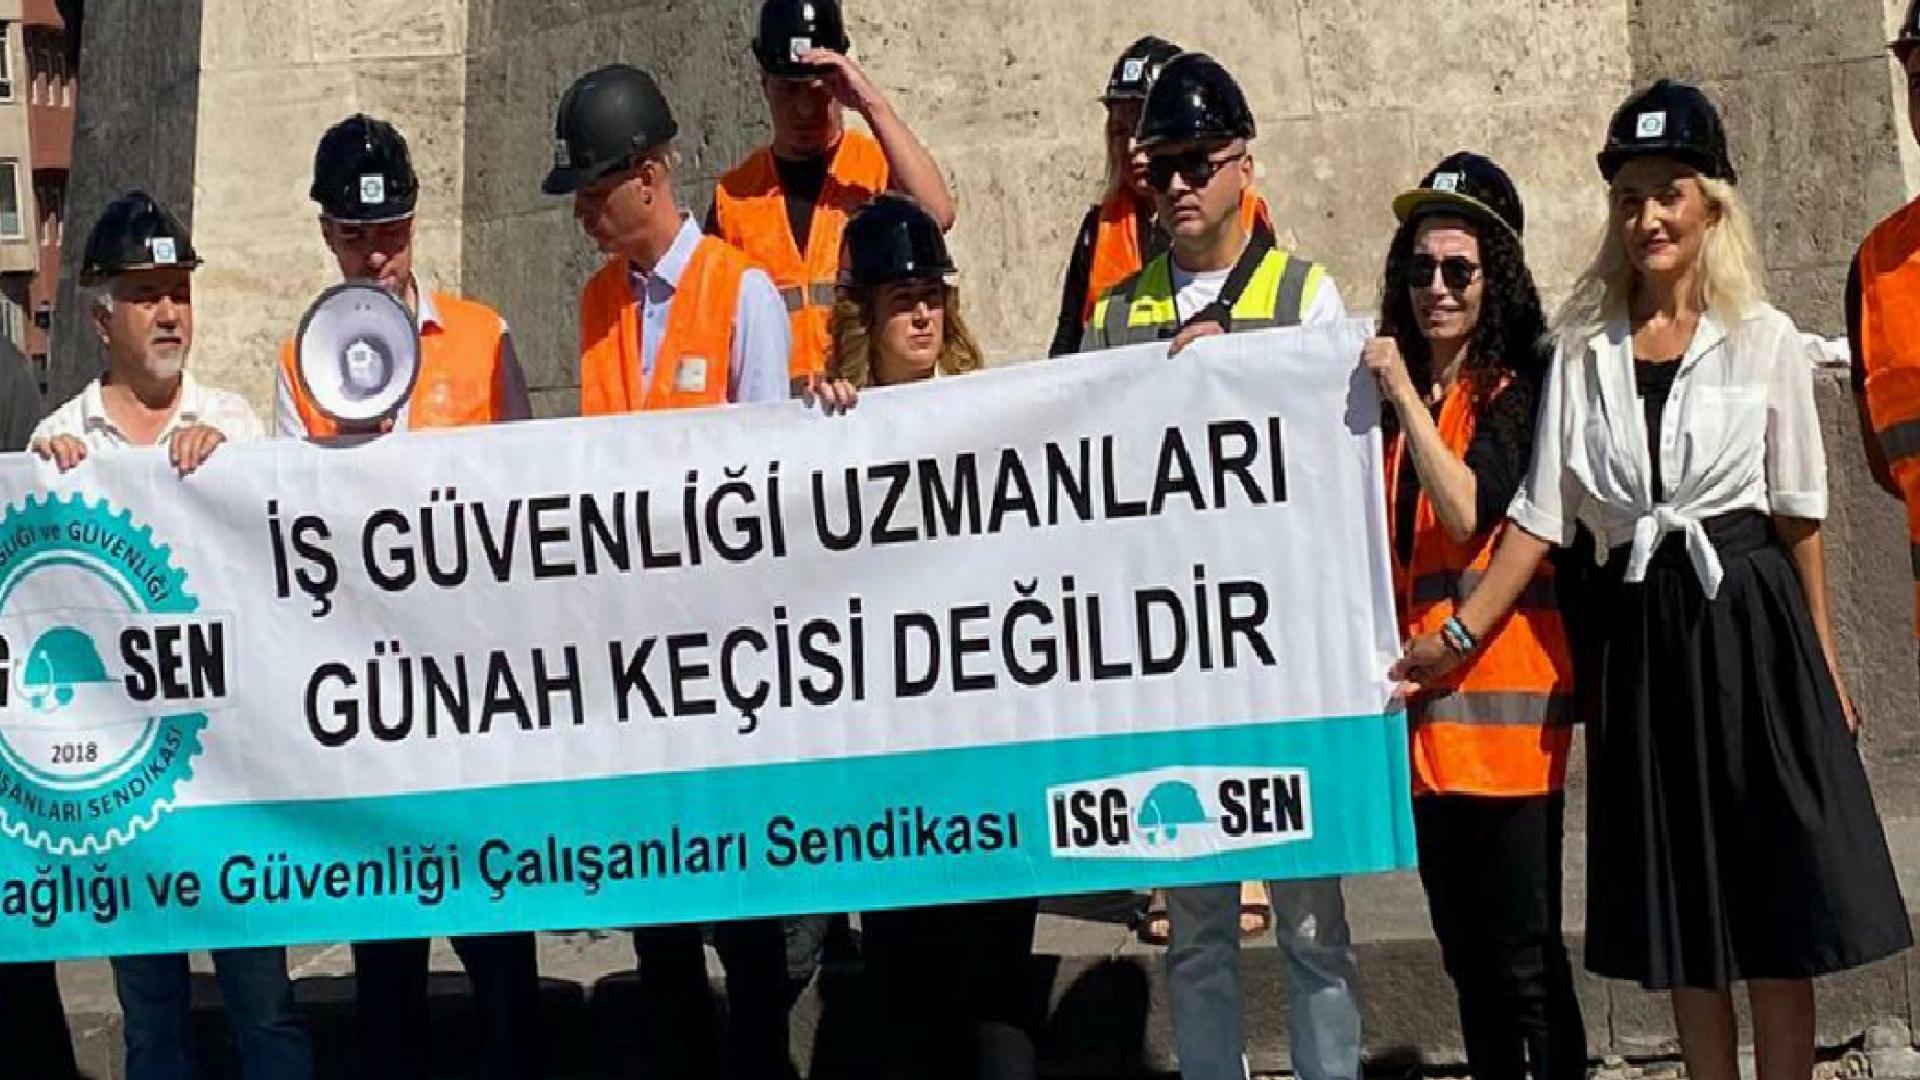 İş güvenliği uzmanları Ankara'da eylem yaptı: İş kazalarının sebebi daha çok kazanmak isteyen hırslı işverenlerdir